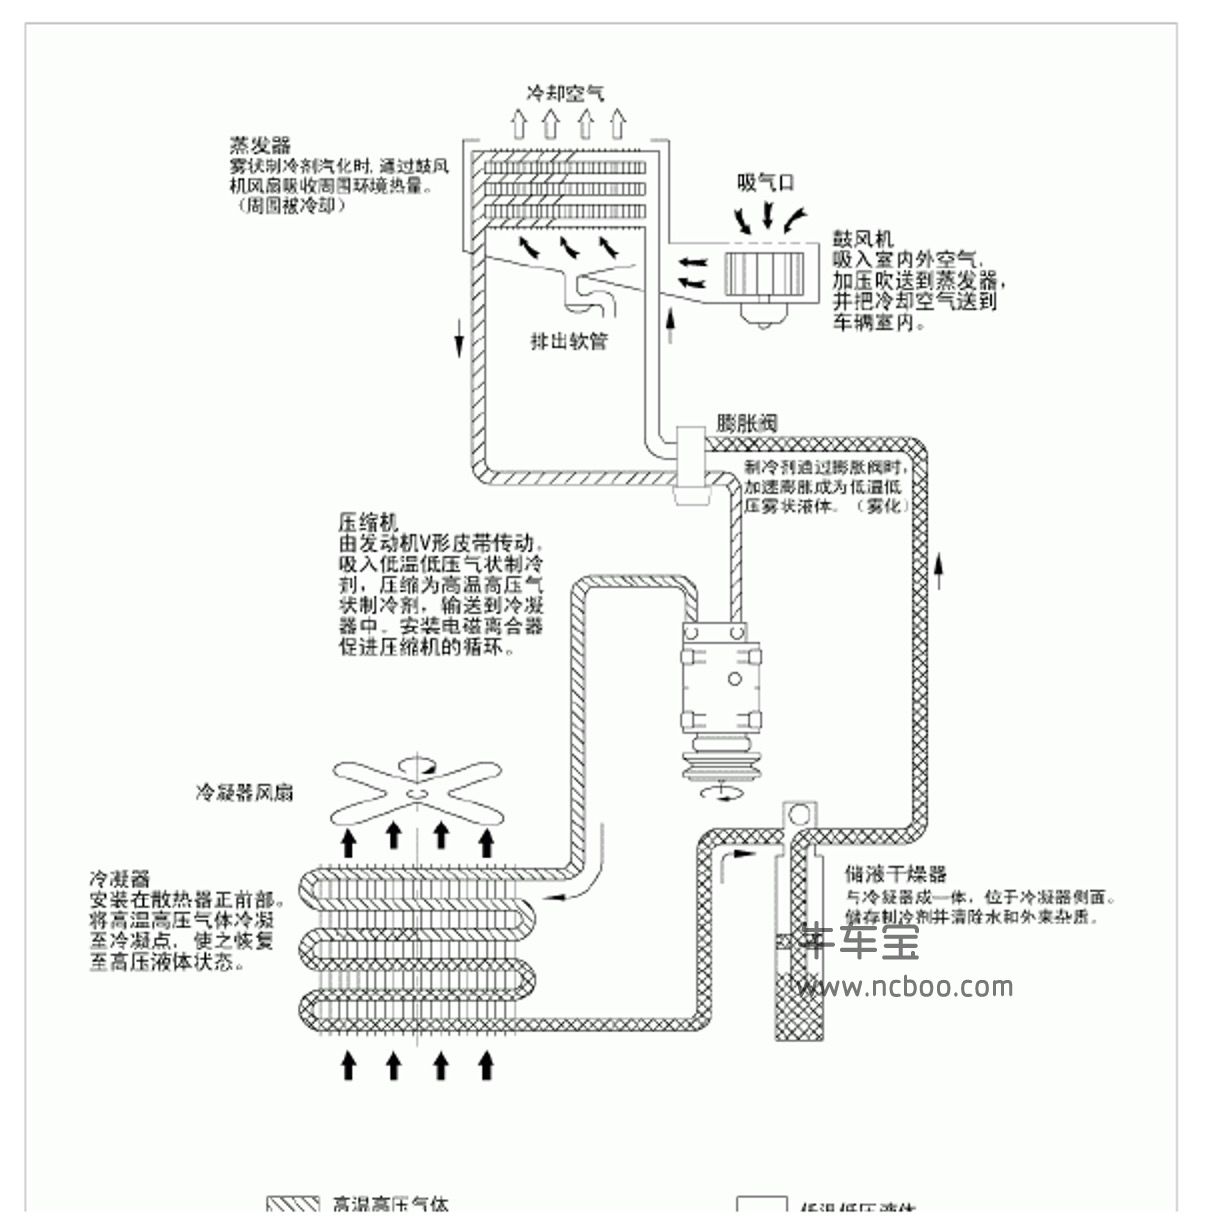 2011款北京现代索纳塔2.0,2.4L原厂维修手册和电路图资料